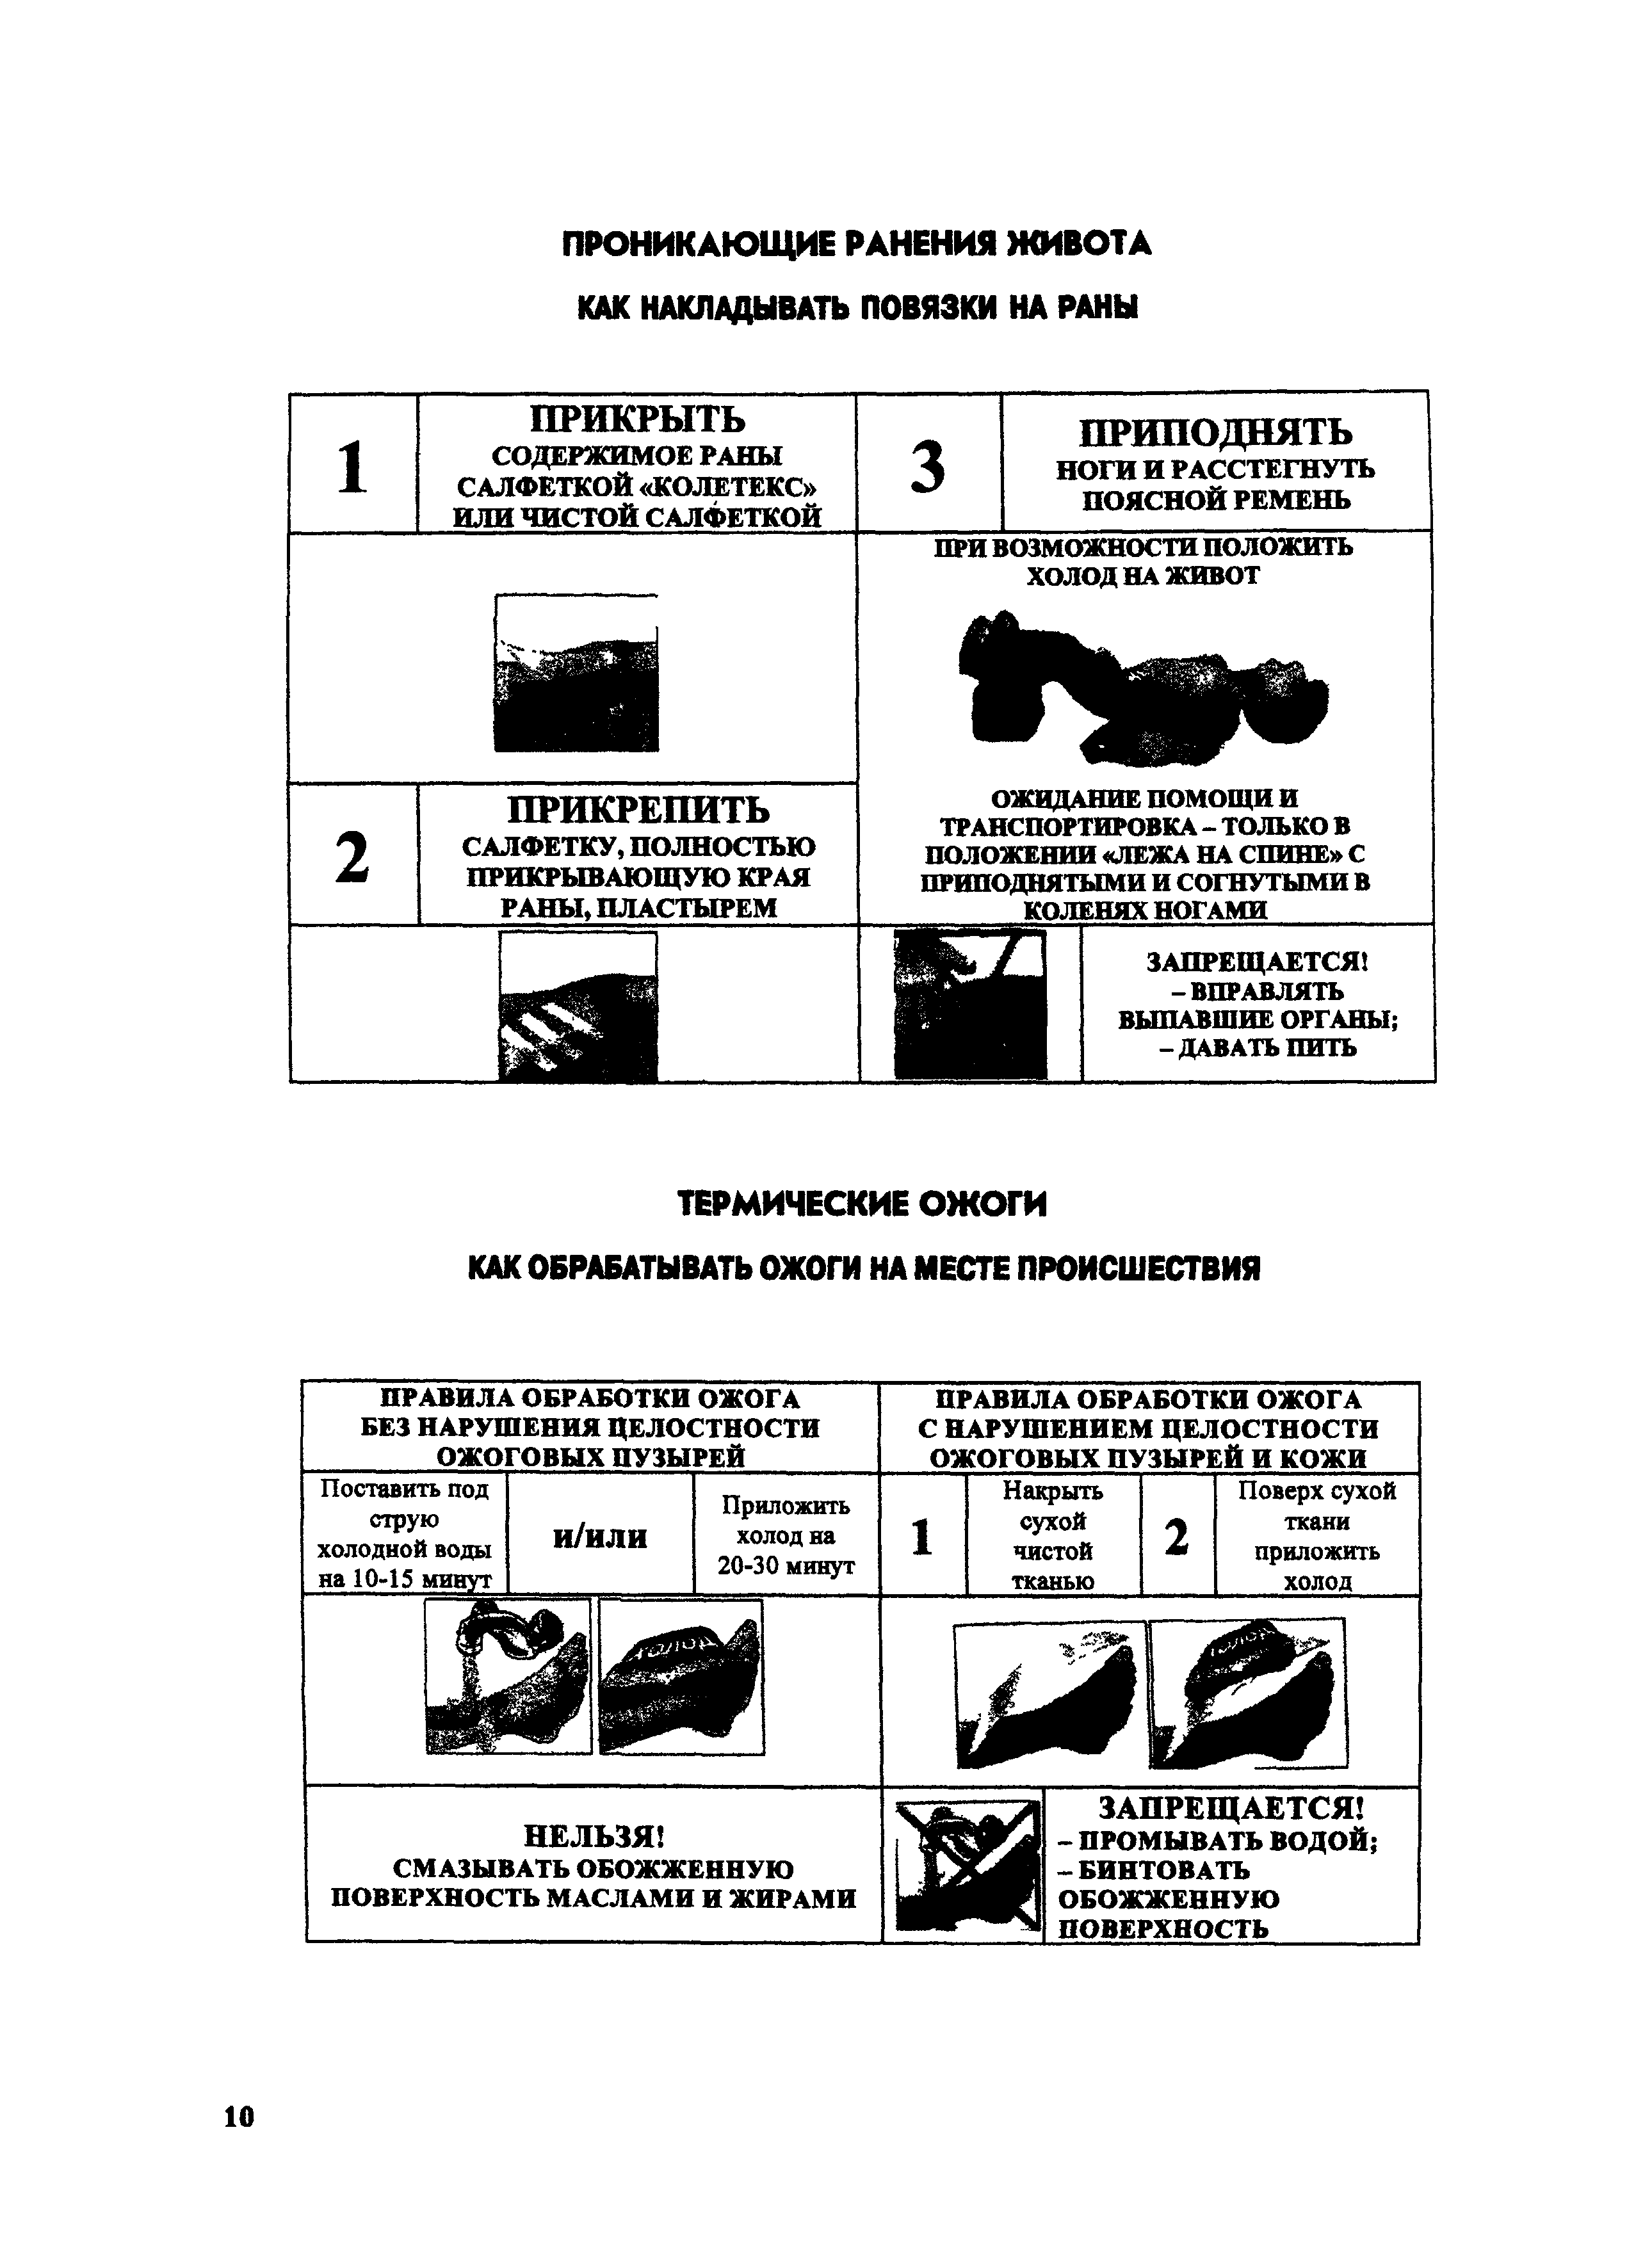 Инструкция по оказанию первой помощи 1994